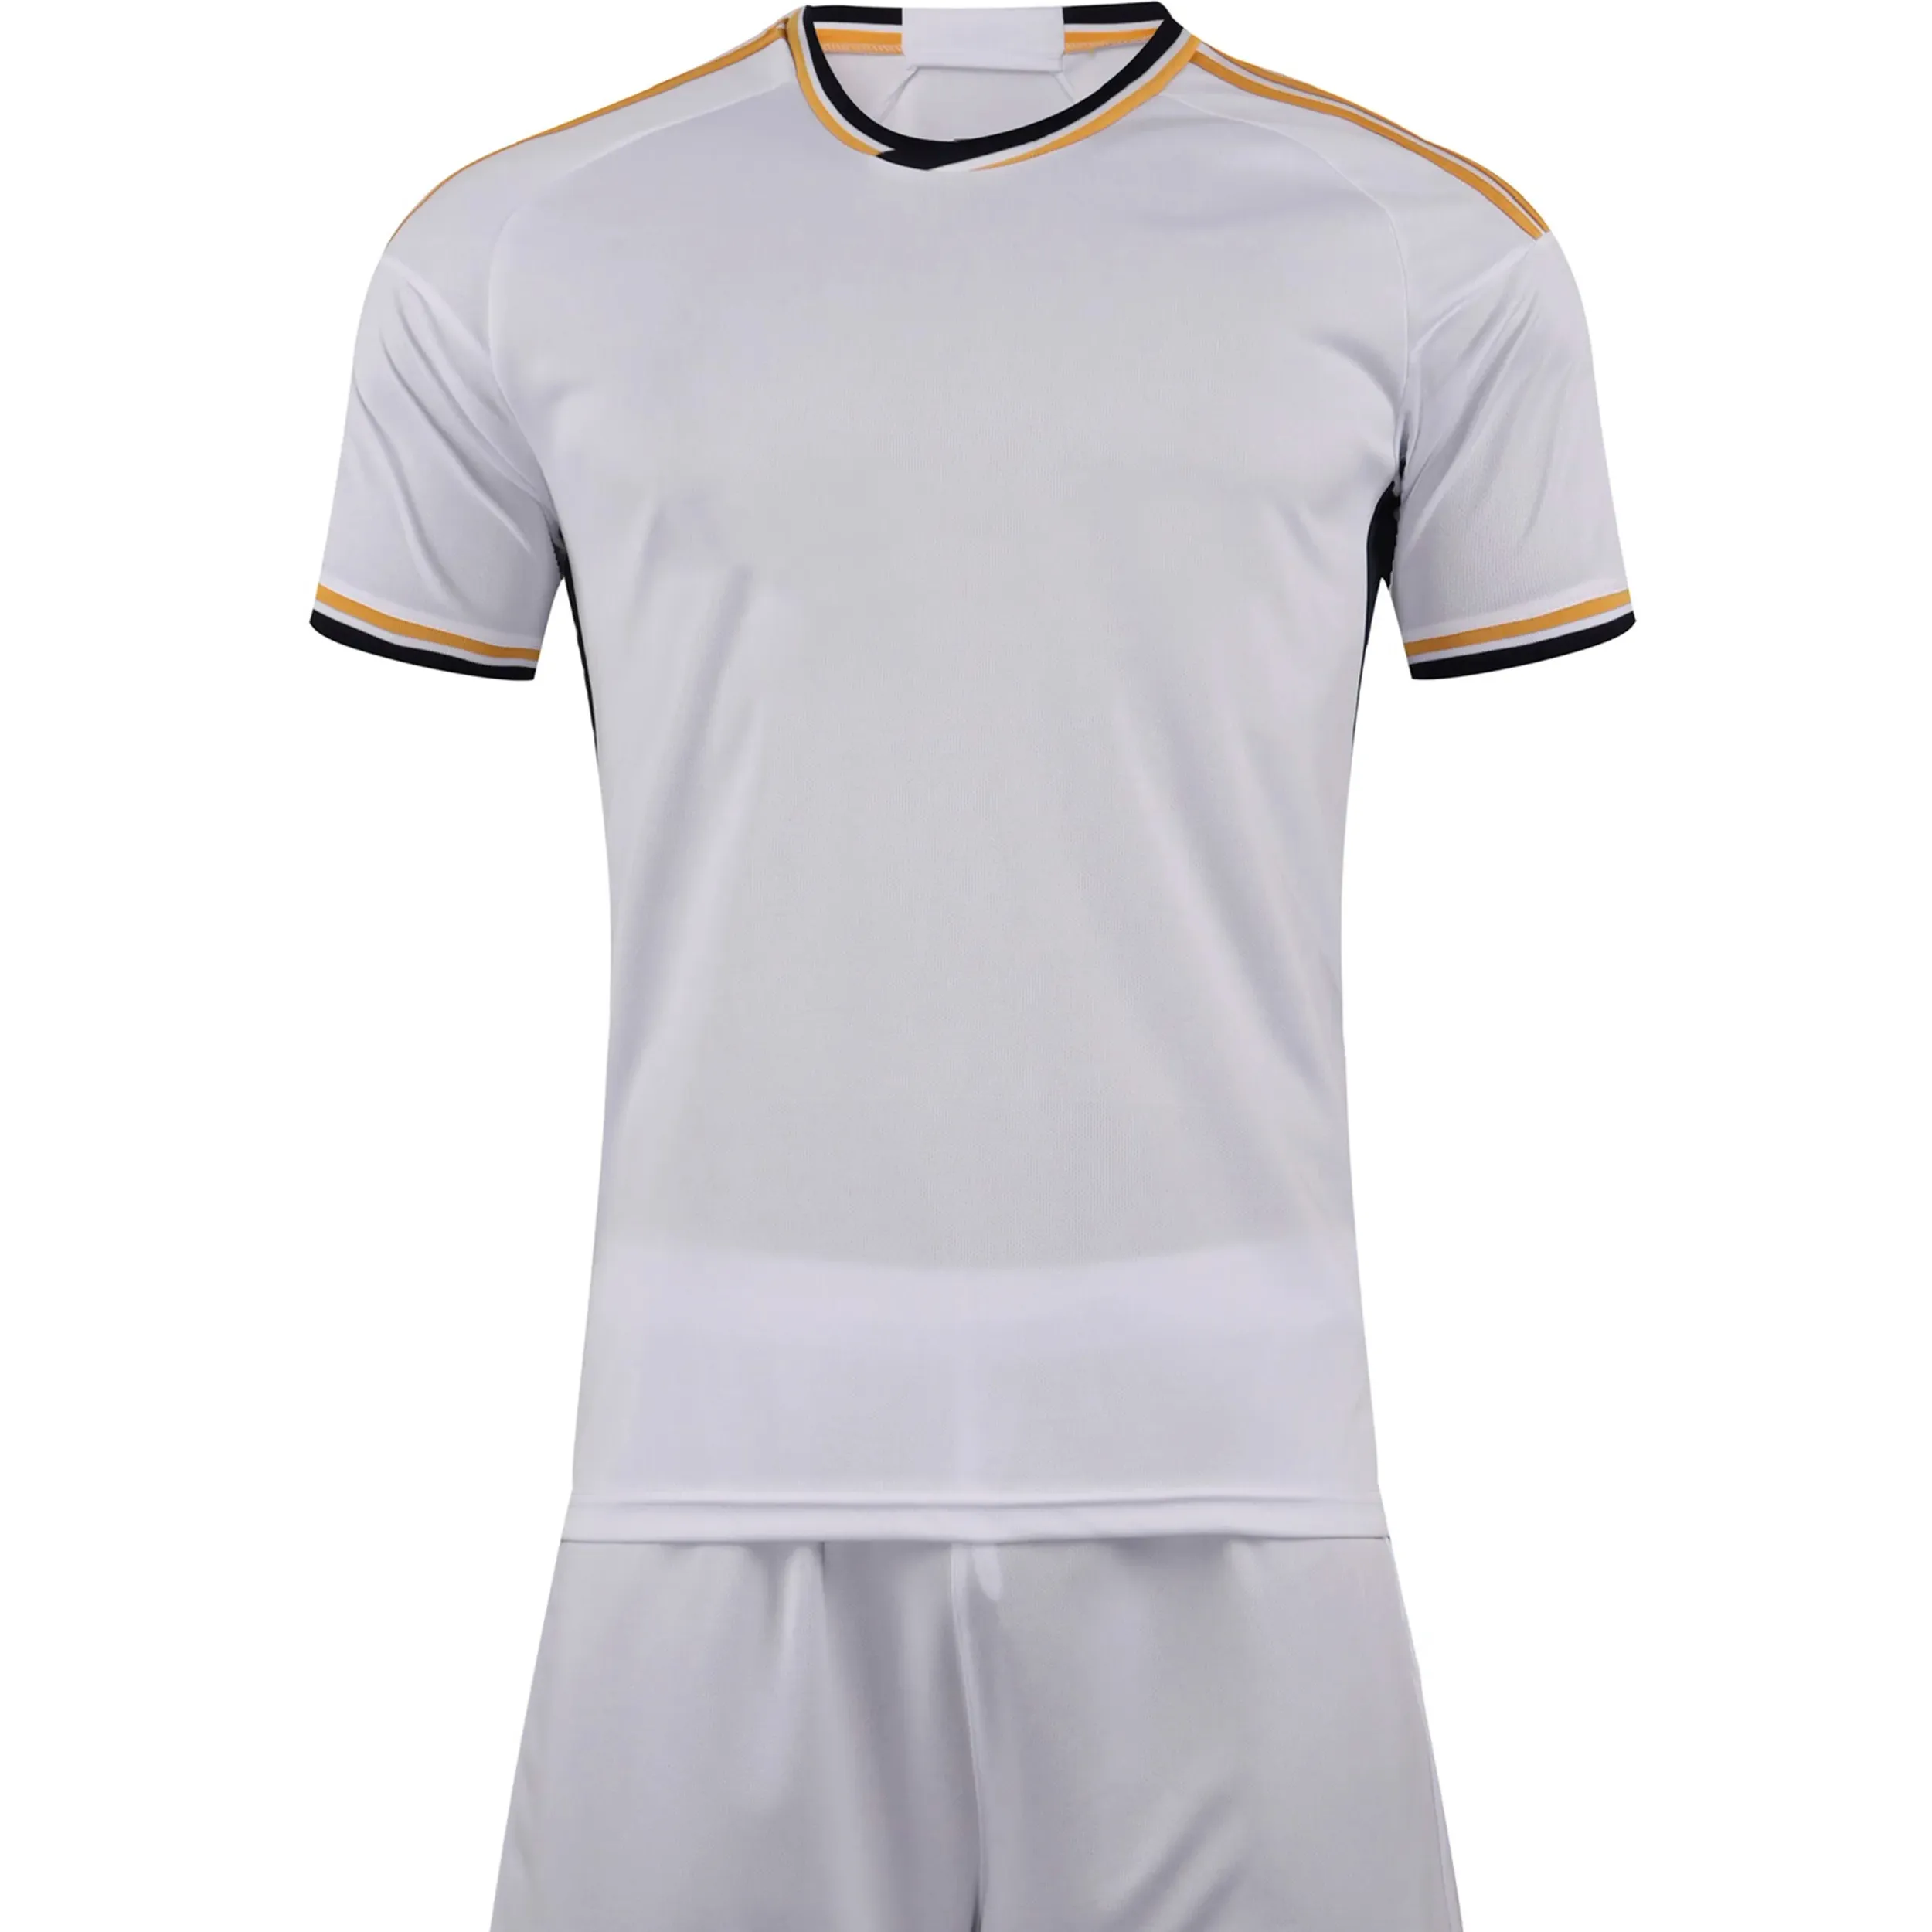 24-25 sublimation imprimé football ensemble complet sublimation football vêtements de sport léger cricket jersey peut imprimer le design que vous voulez